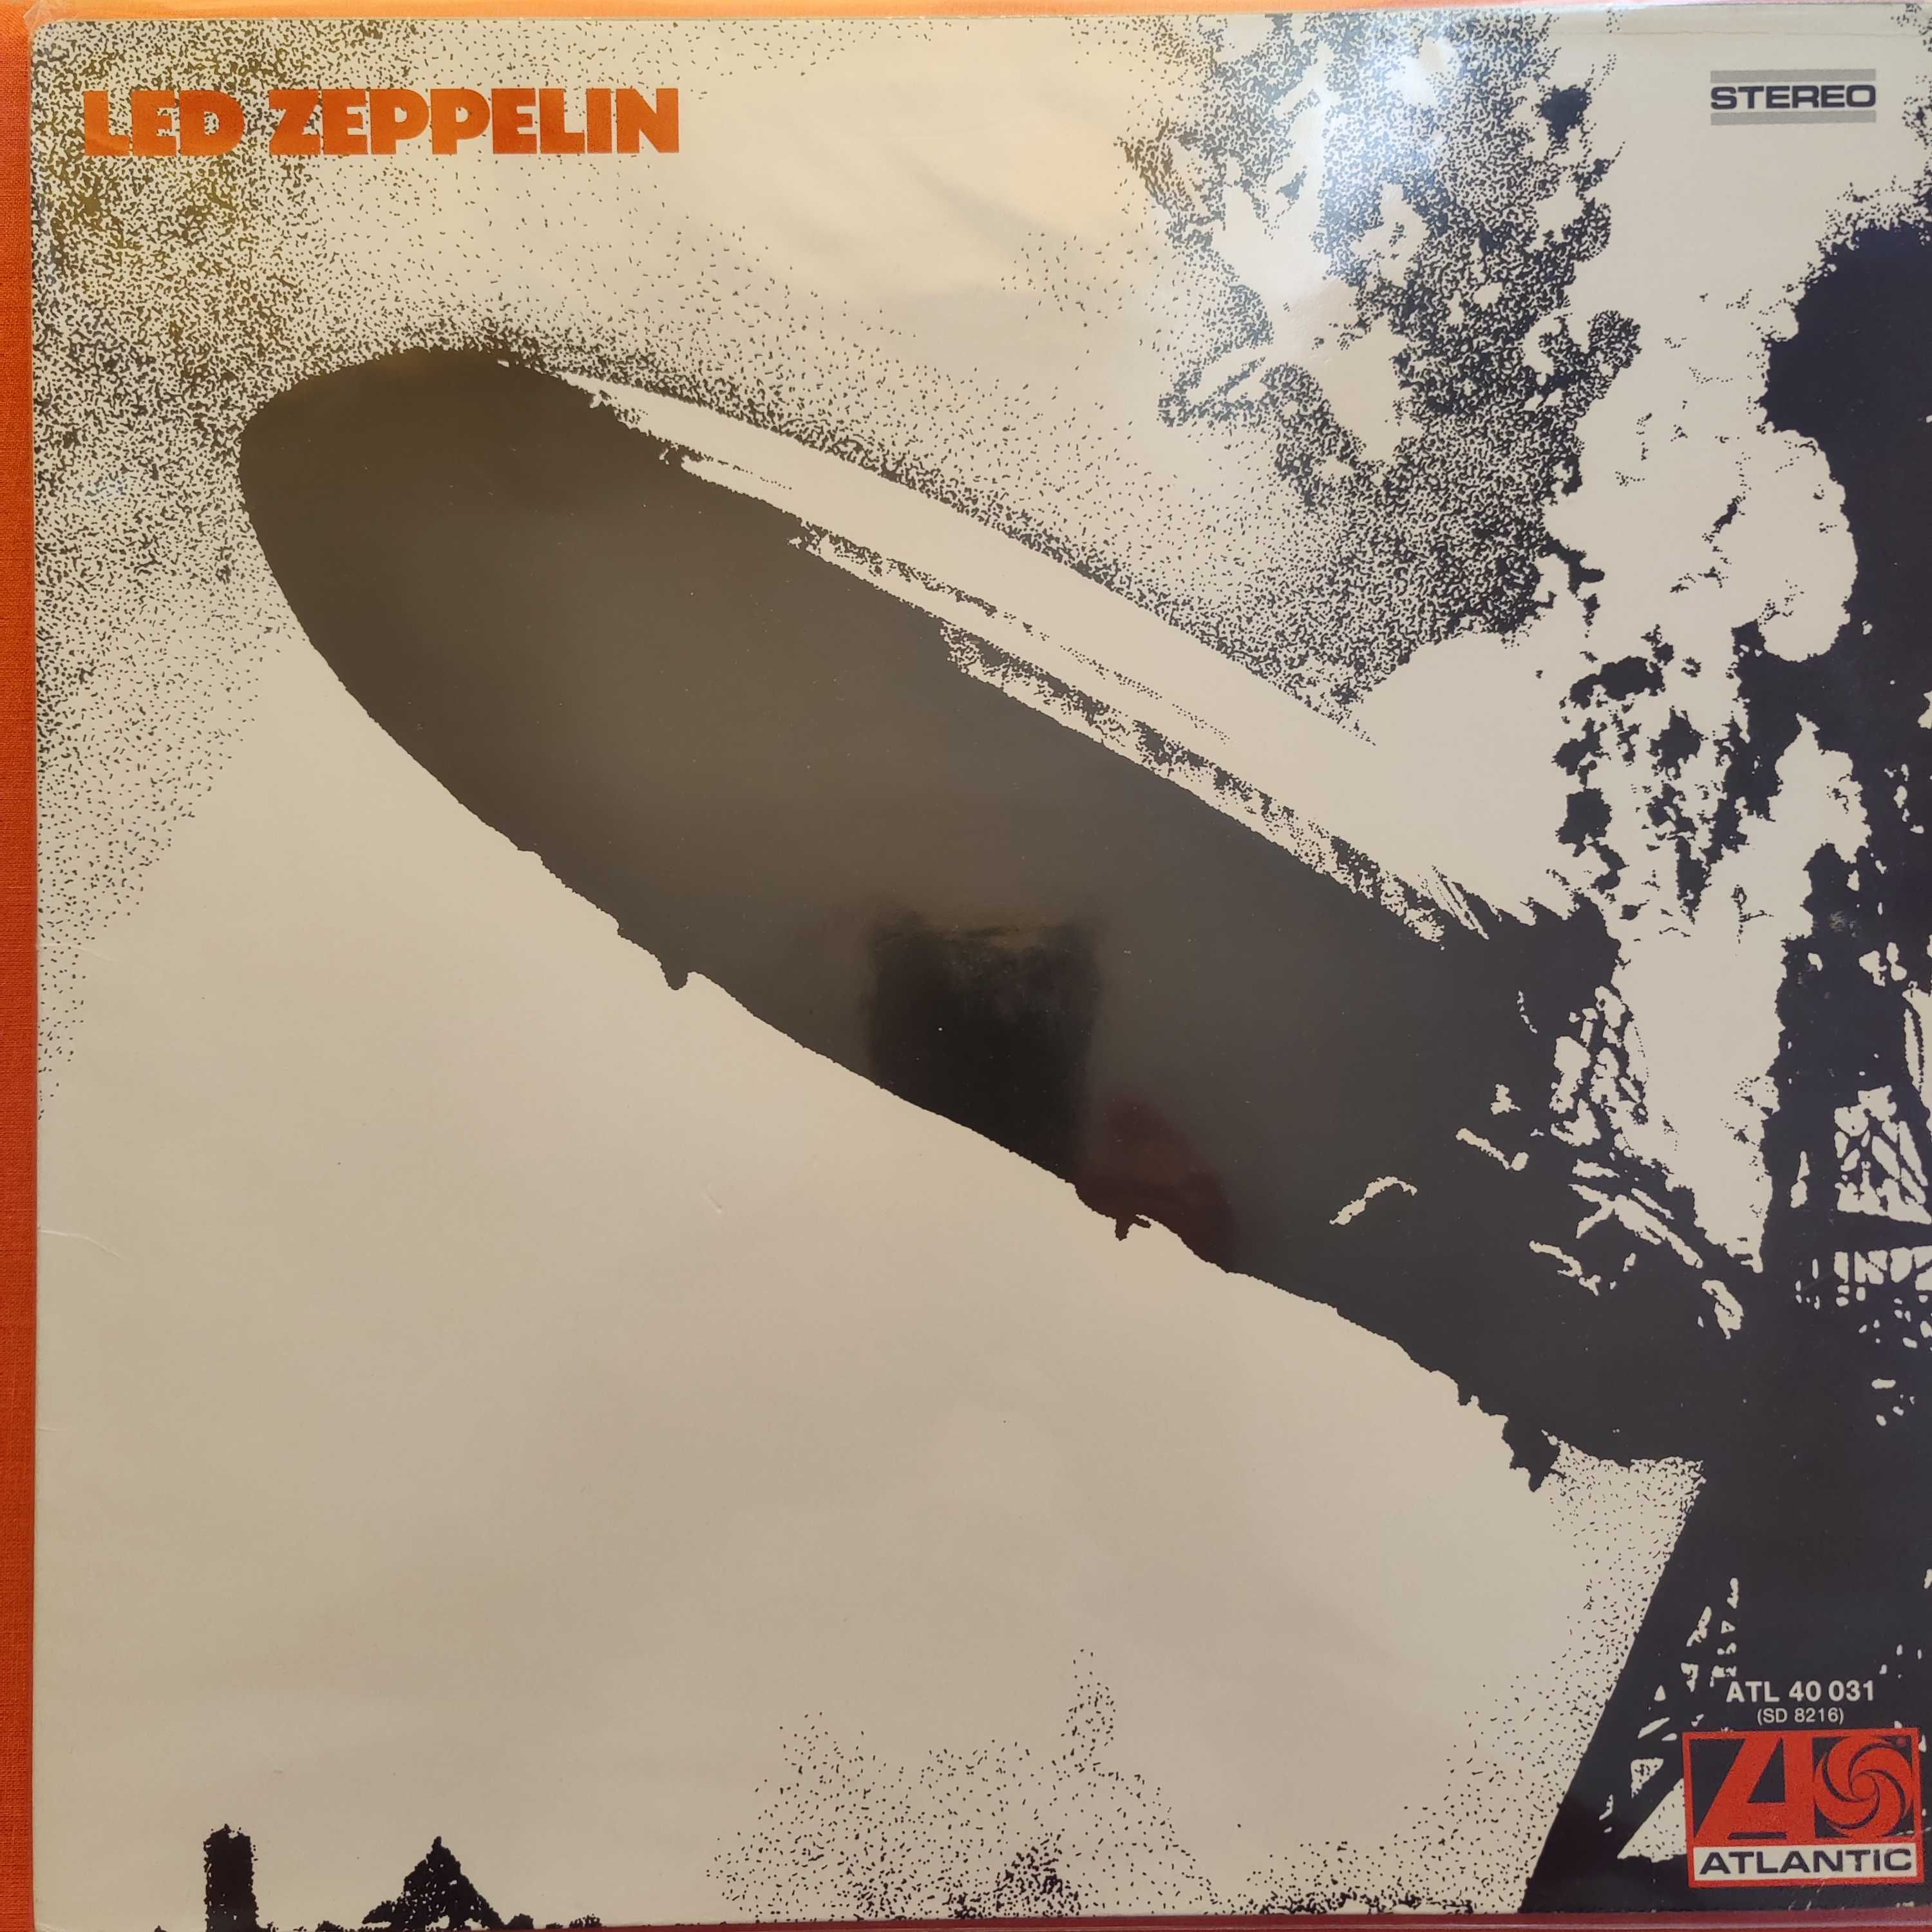 Вінілові платівки Led Zeppelin, оригінал, вінтаж, колекційні, б/у